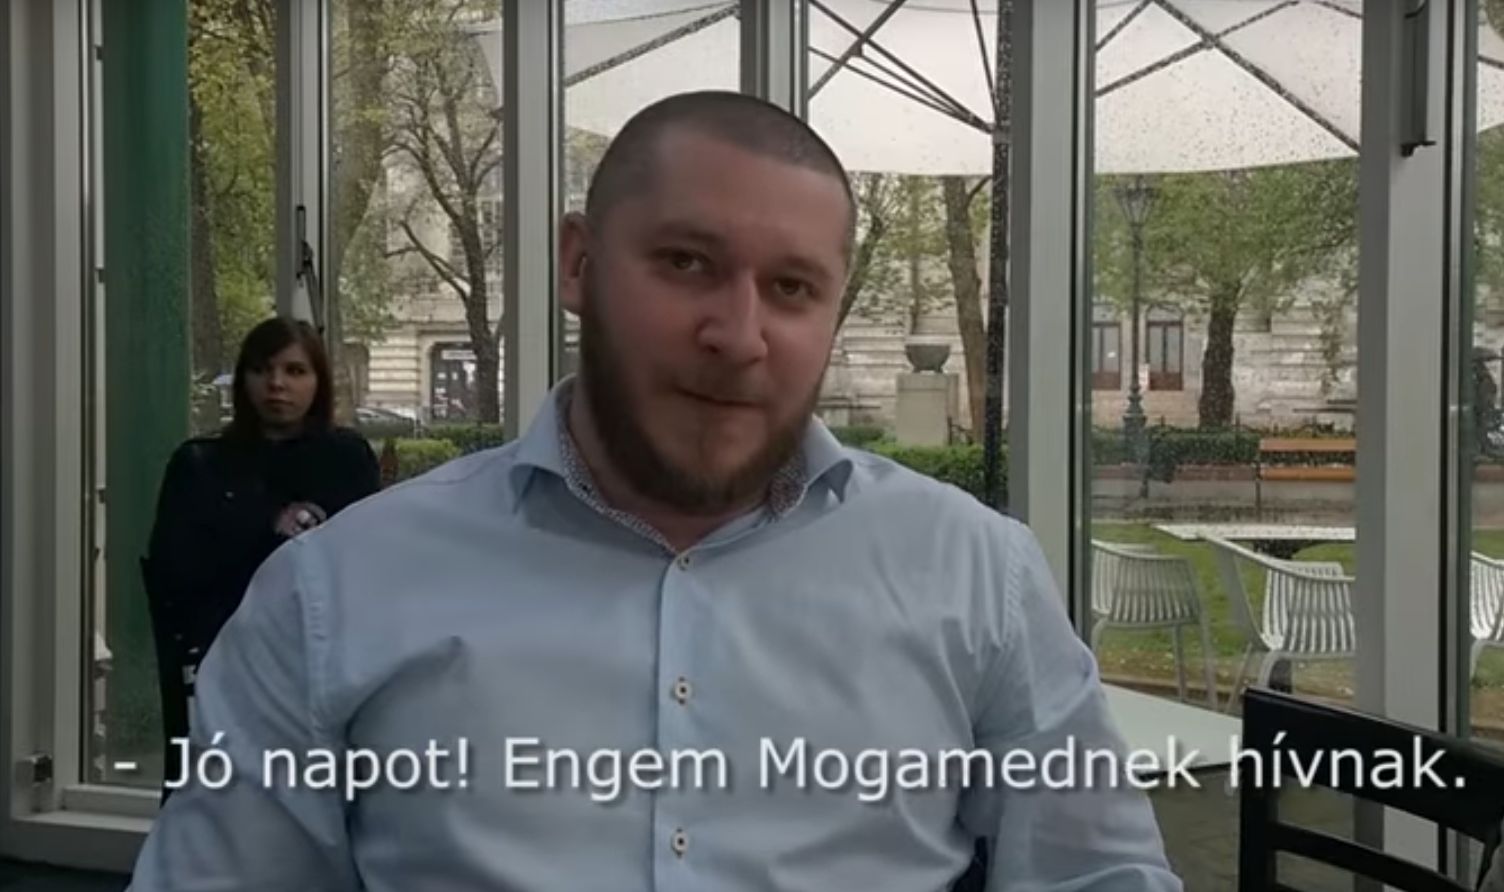 Pintér Sándor nem árulja el, hogy mi van a szovjet emlékművet fegyelmező videóval megvédő Magomeddel